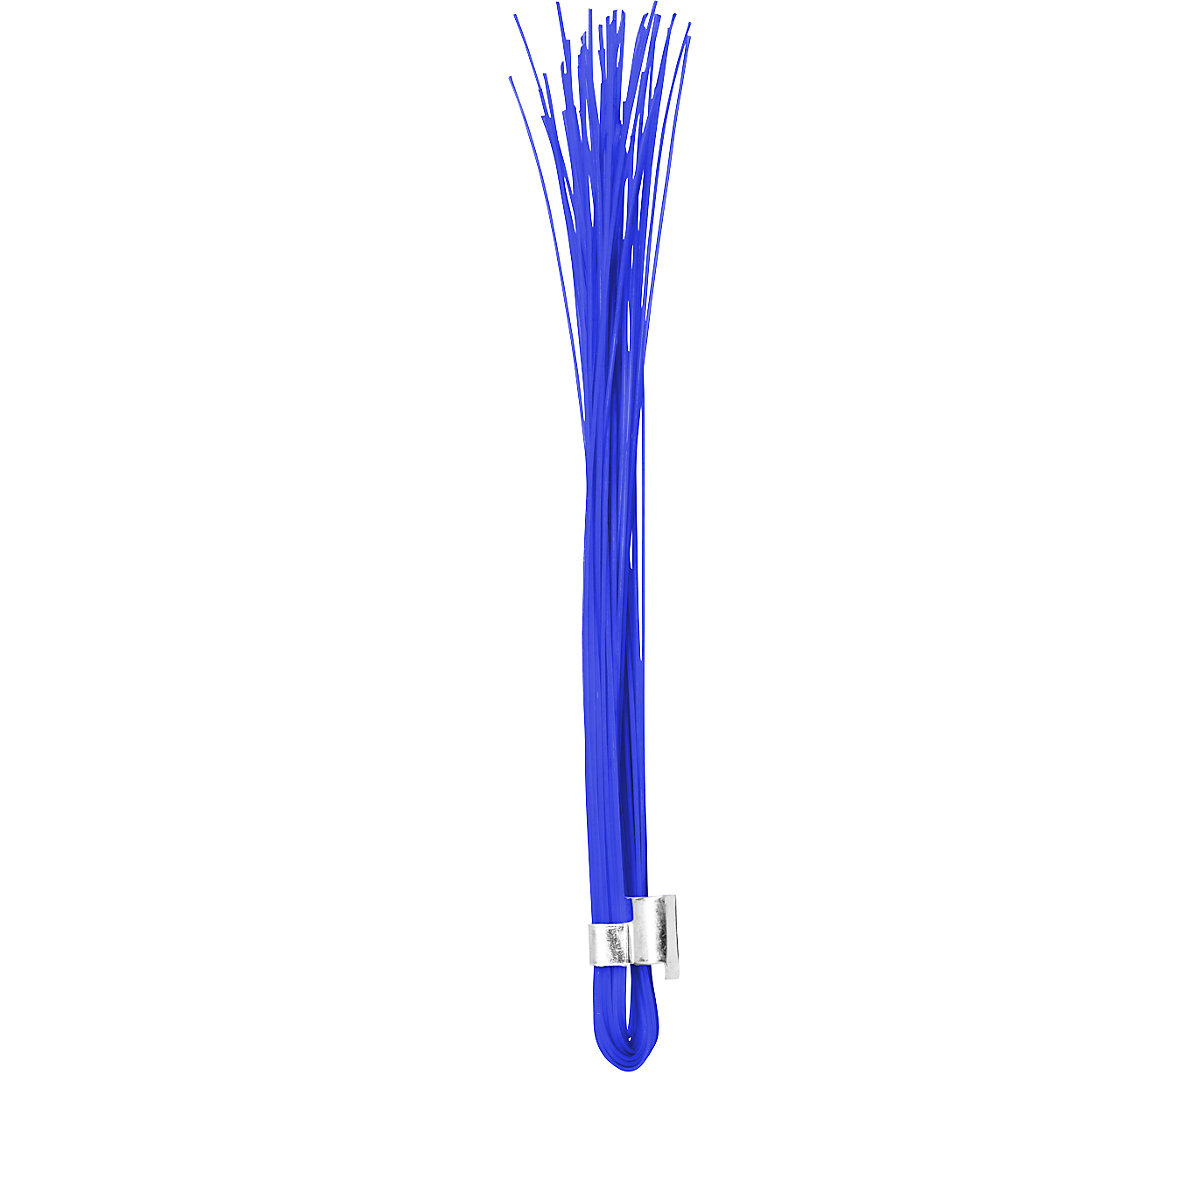 Zastavice za označavanje – Ampere, karton s 500 kom., u fluorescentnoj plavoj boji-5